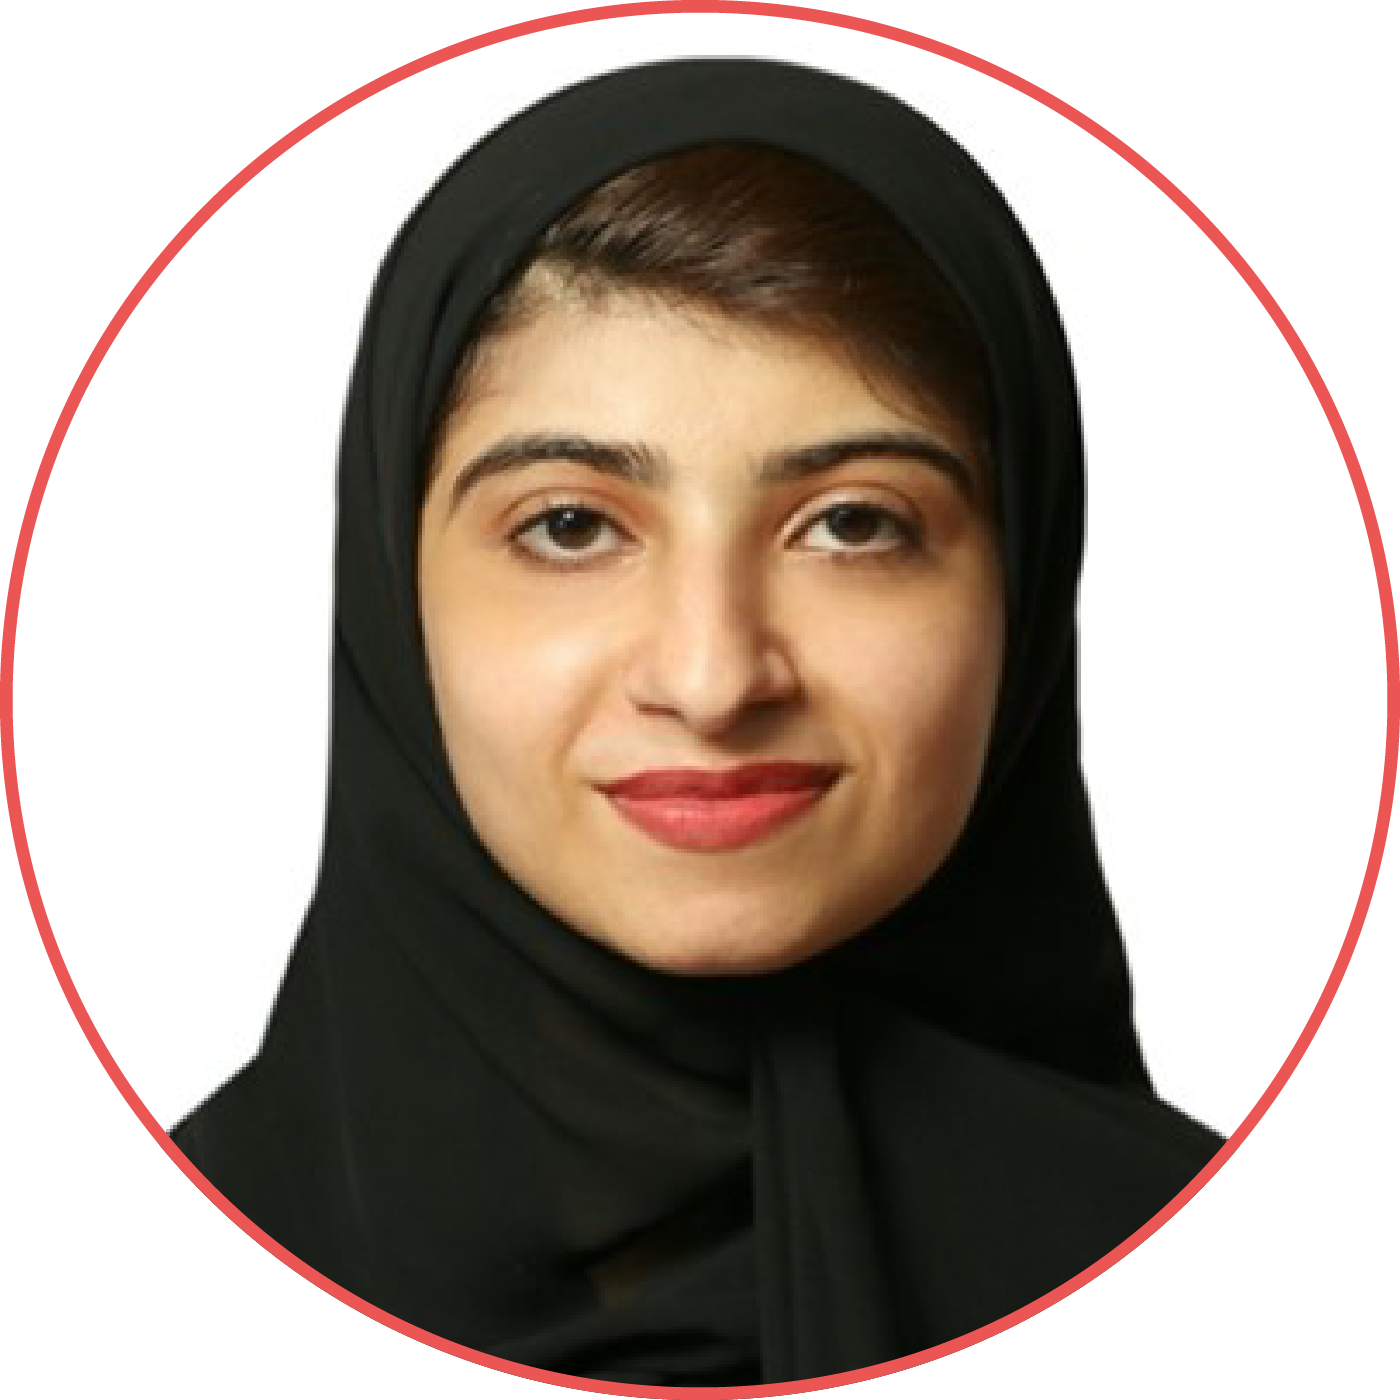 مريم أحمد الأحمد, بكالوريوس في إدارة الأعمال – تطوير وإدارة الموارد البشرية   كلية الإدارة والاقتصاد   